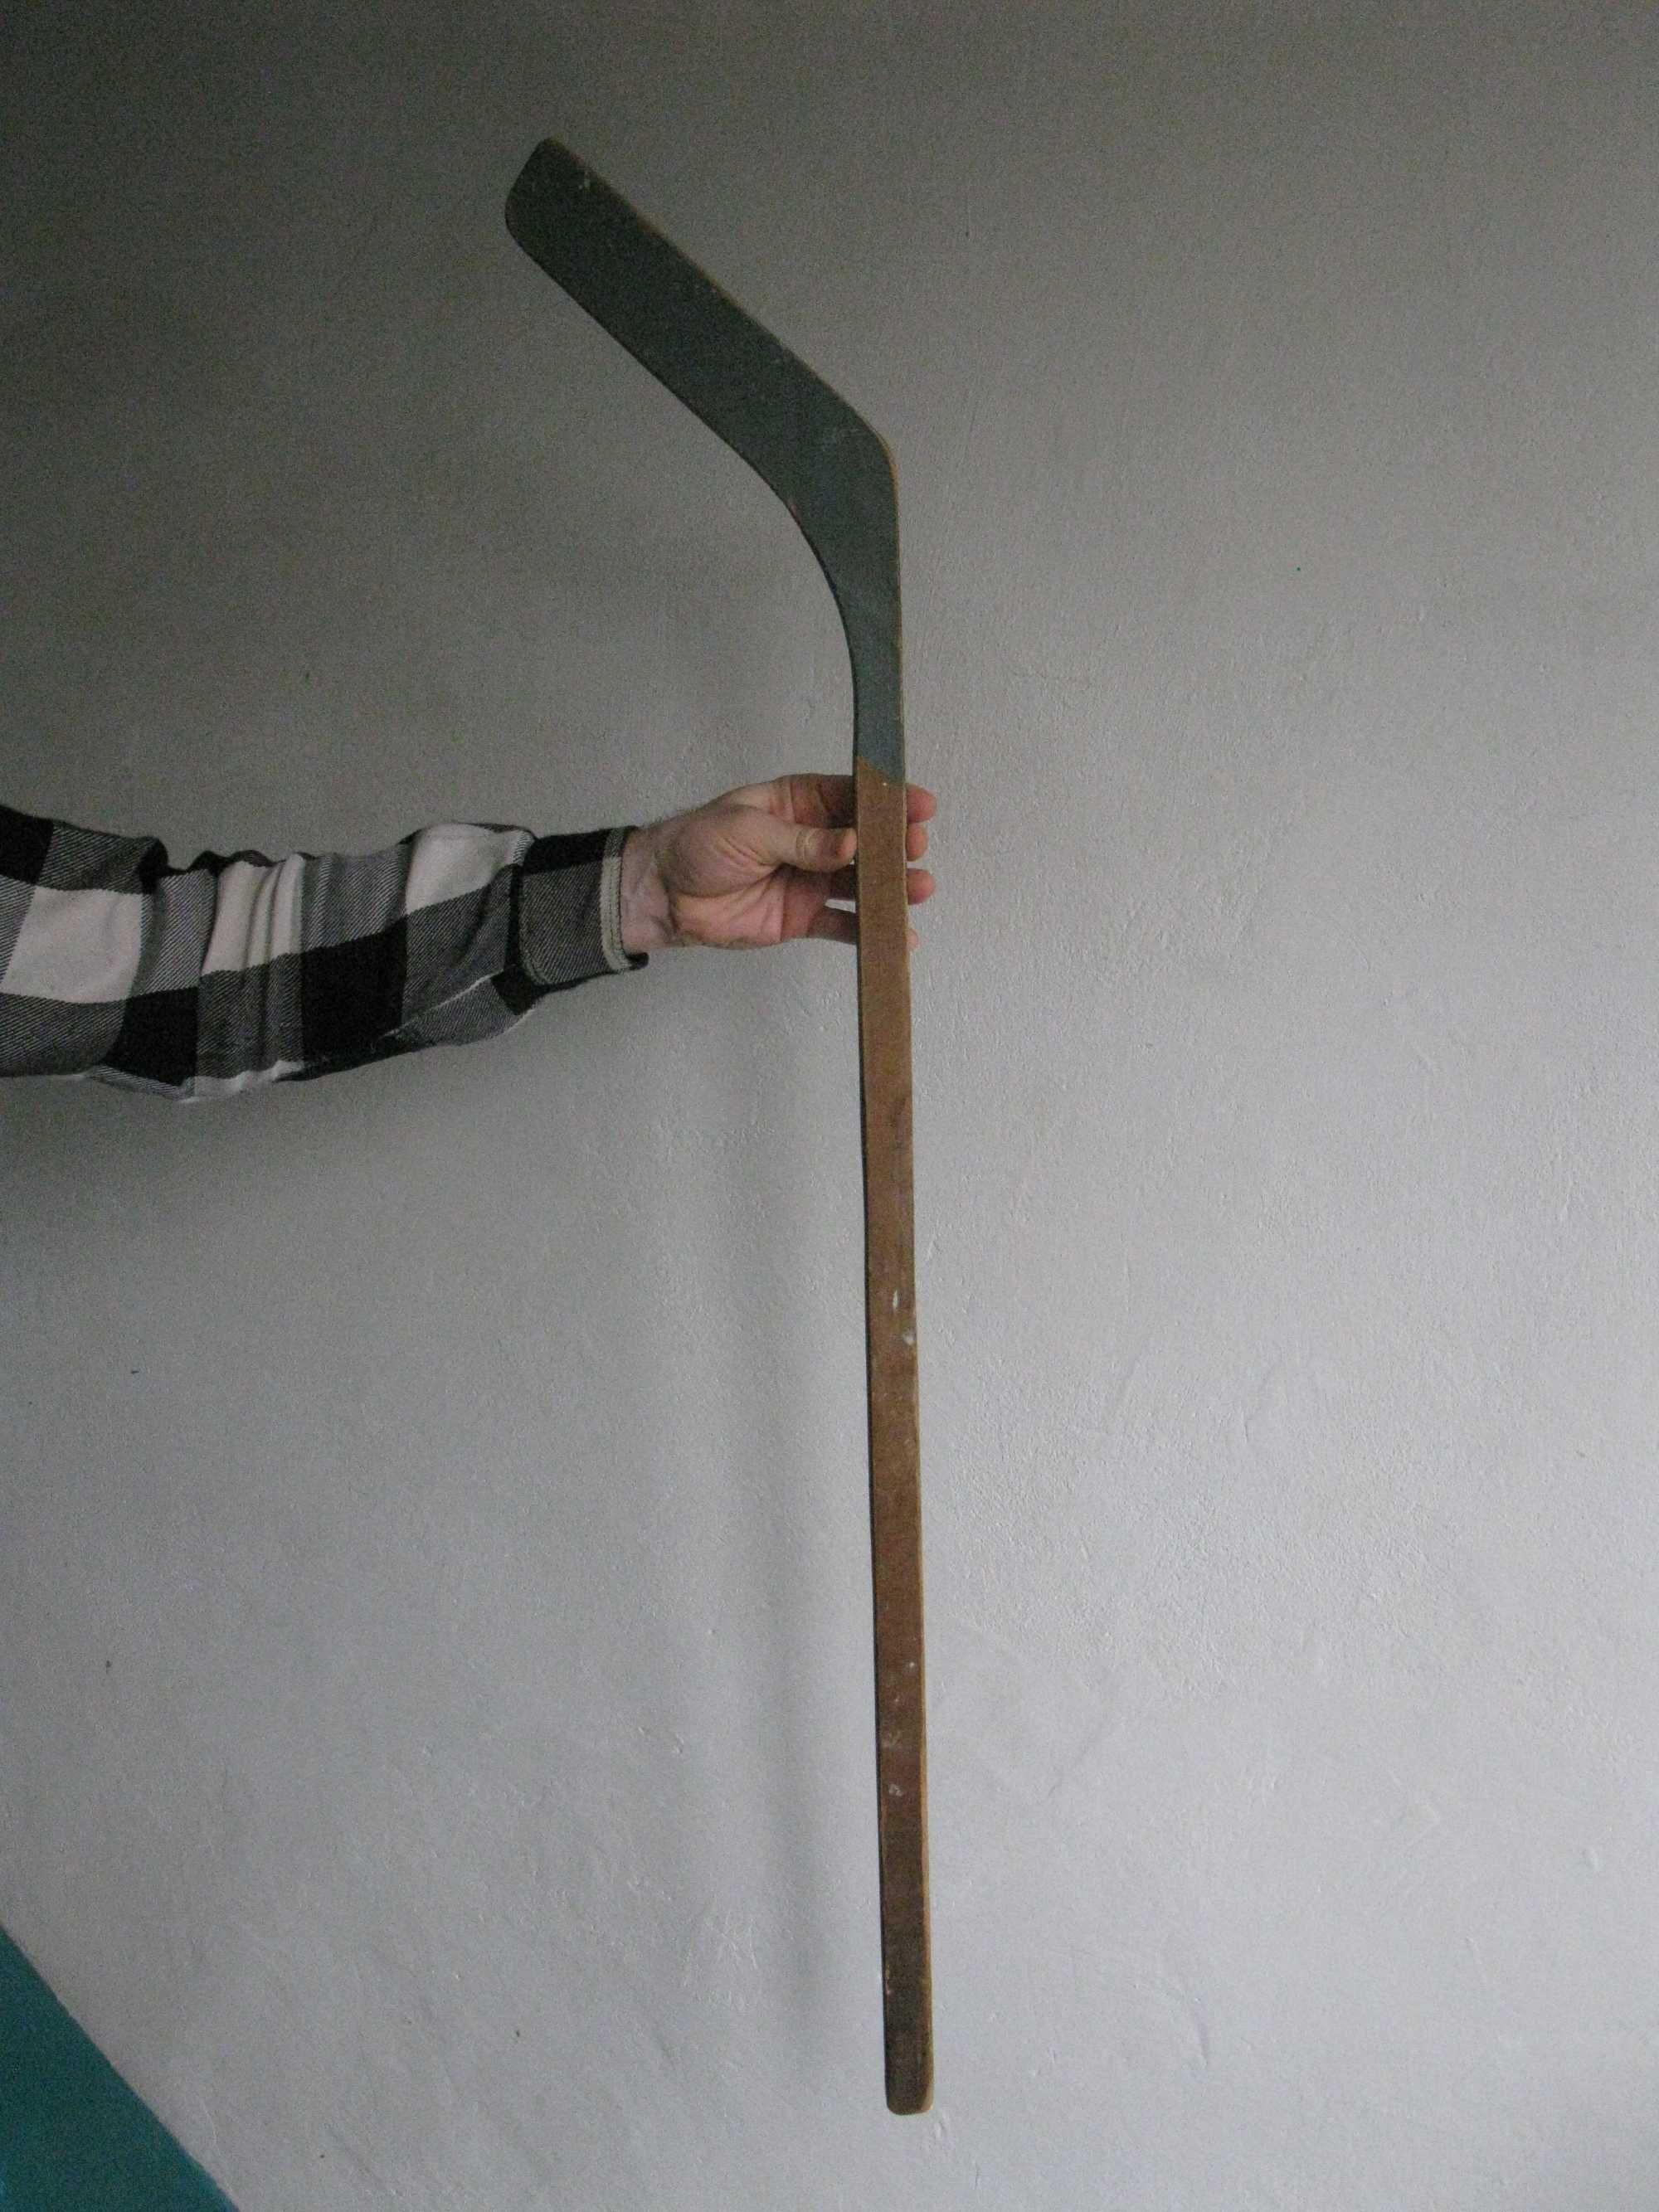 Клюшка для хоккея
Длина ручки до изгиба 94 см